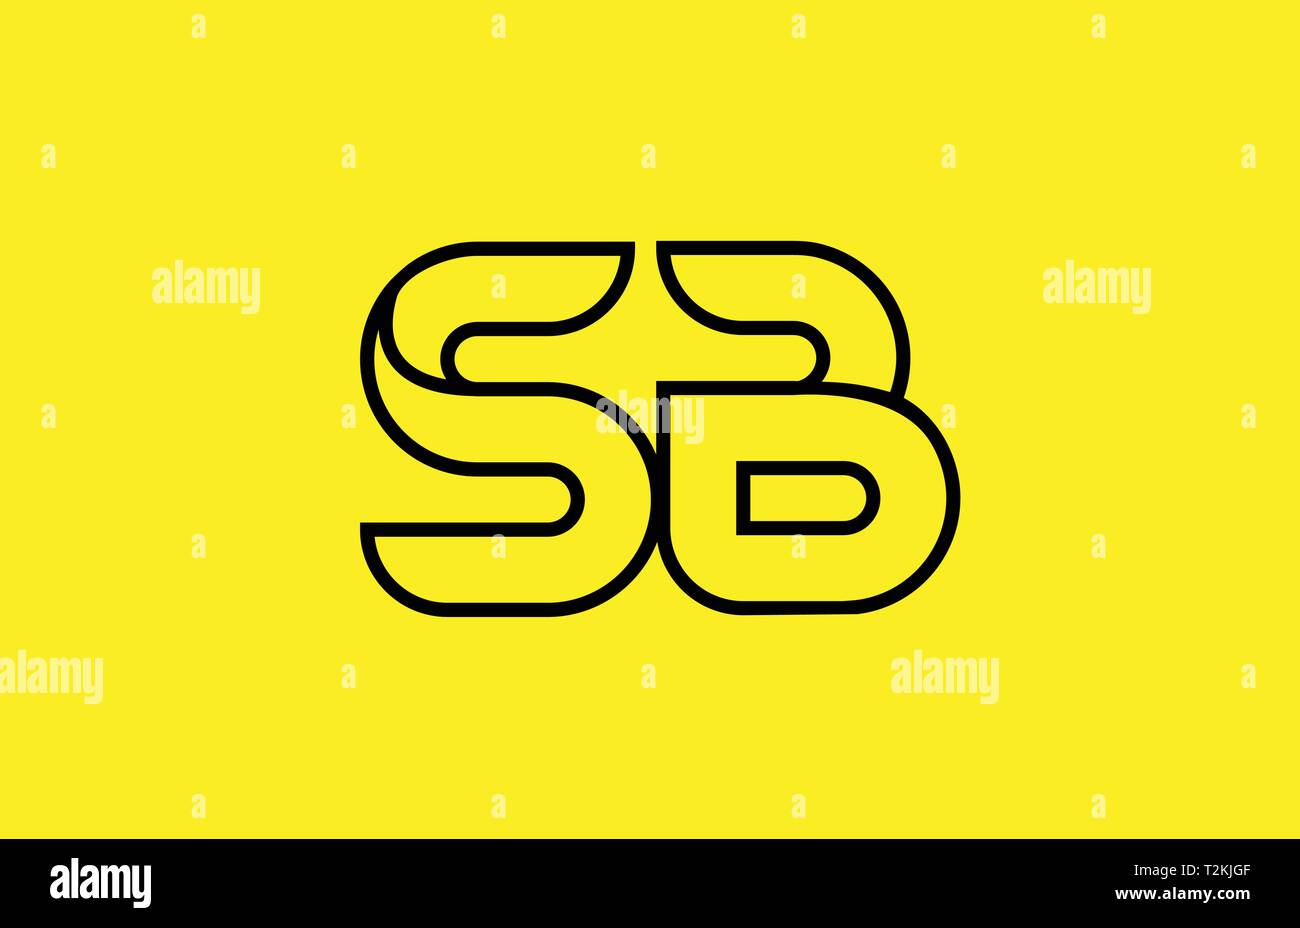 Gelb schwarze Linie Buchstaben SB S B logo Kombination Symbol für ein Unternehmen, Business oder Corporate Identity Design Stock Vektor